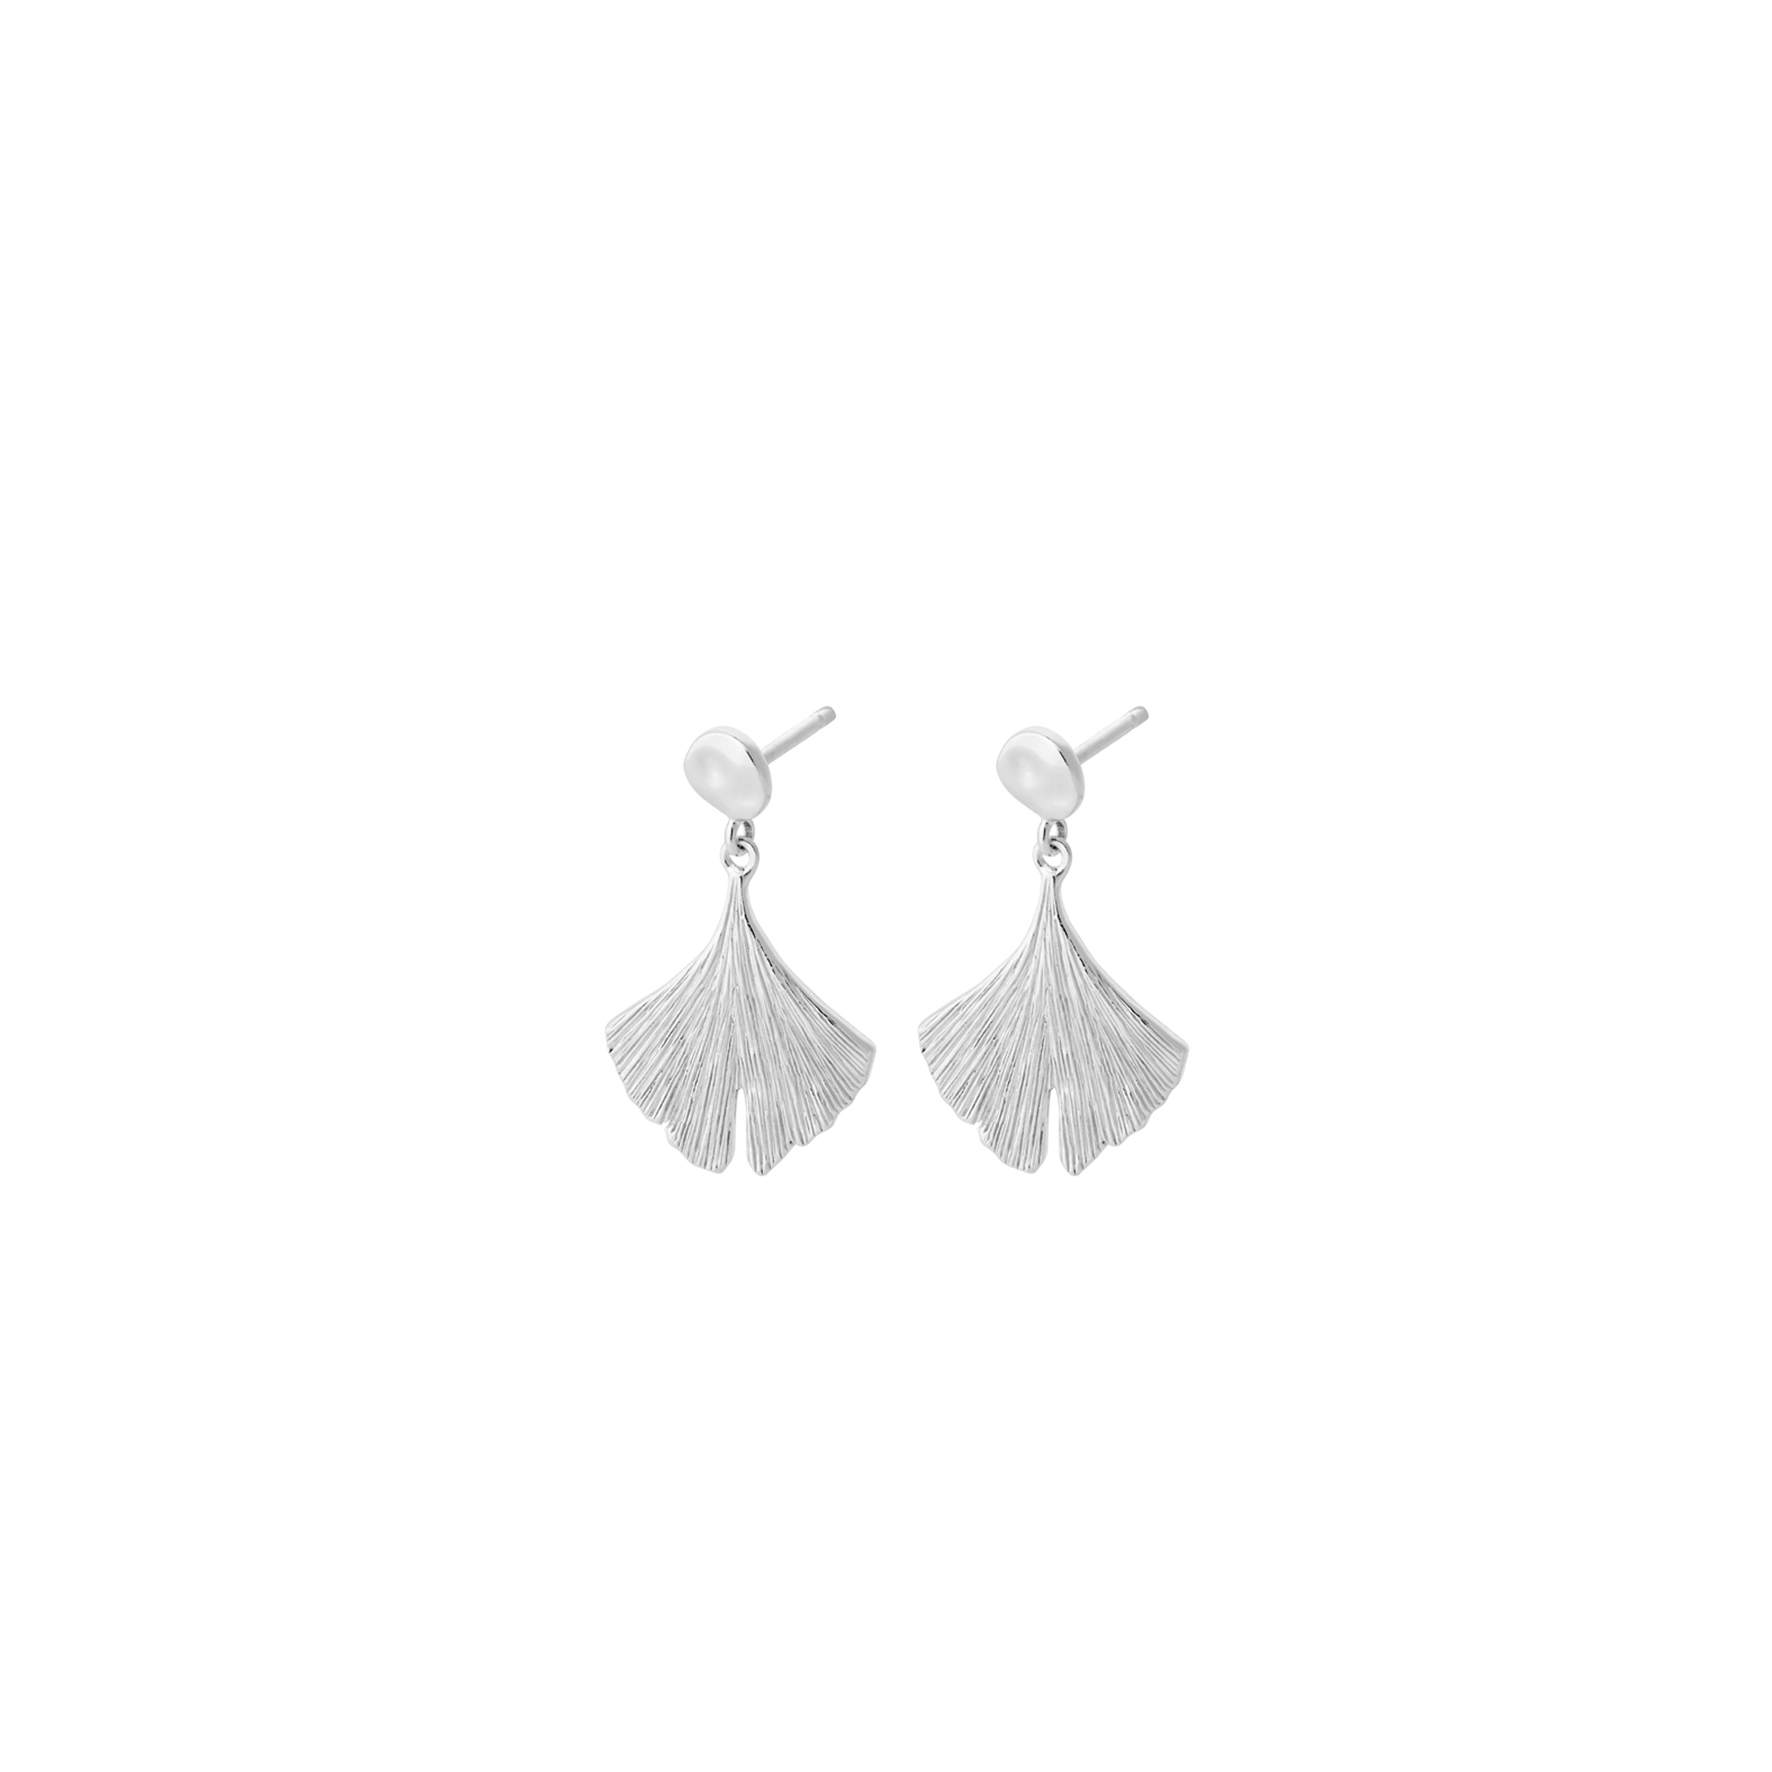 Biloba Earrings from Pernille Corydon in Silver Sterling 925